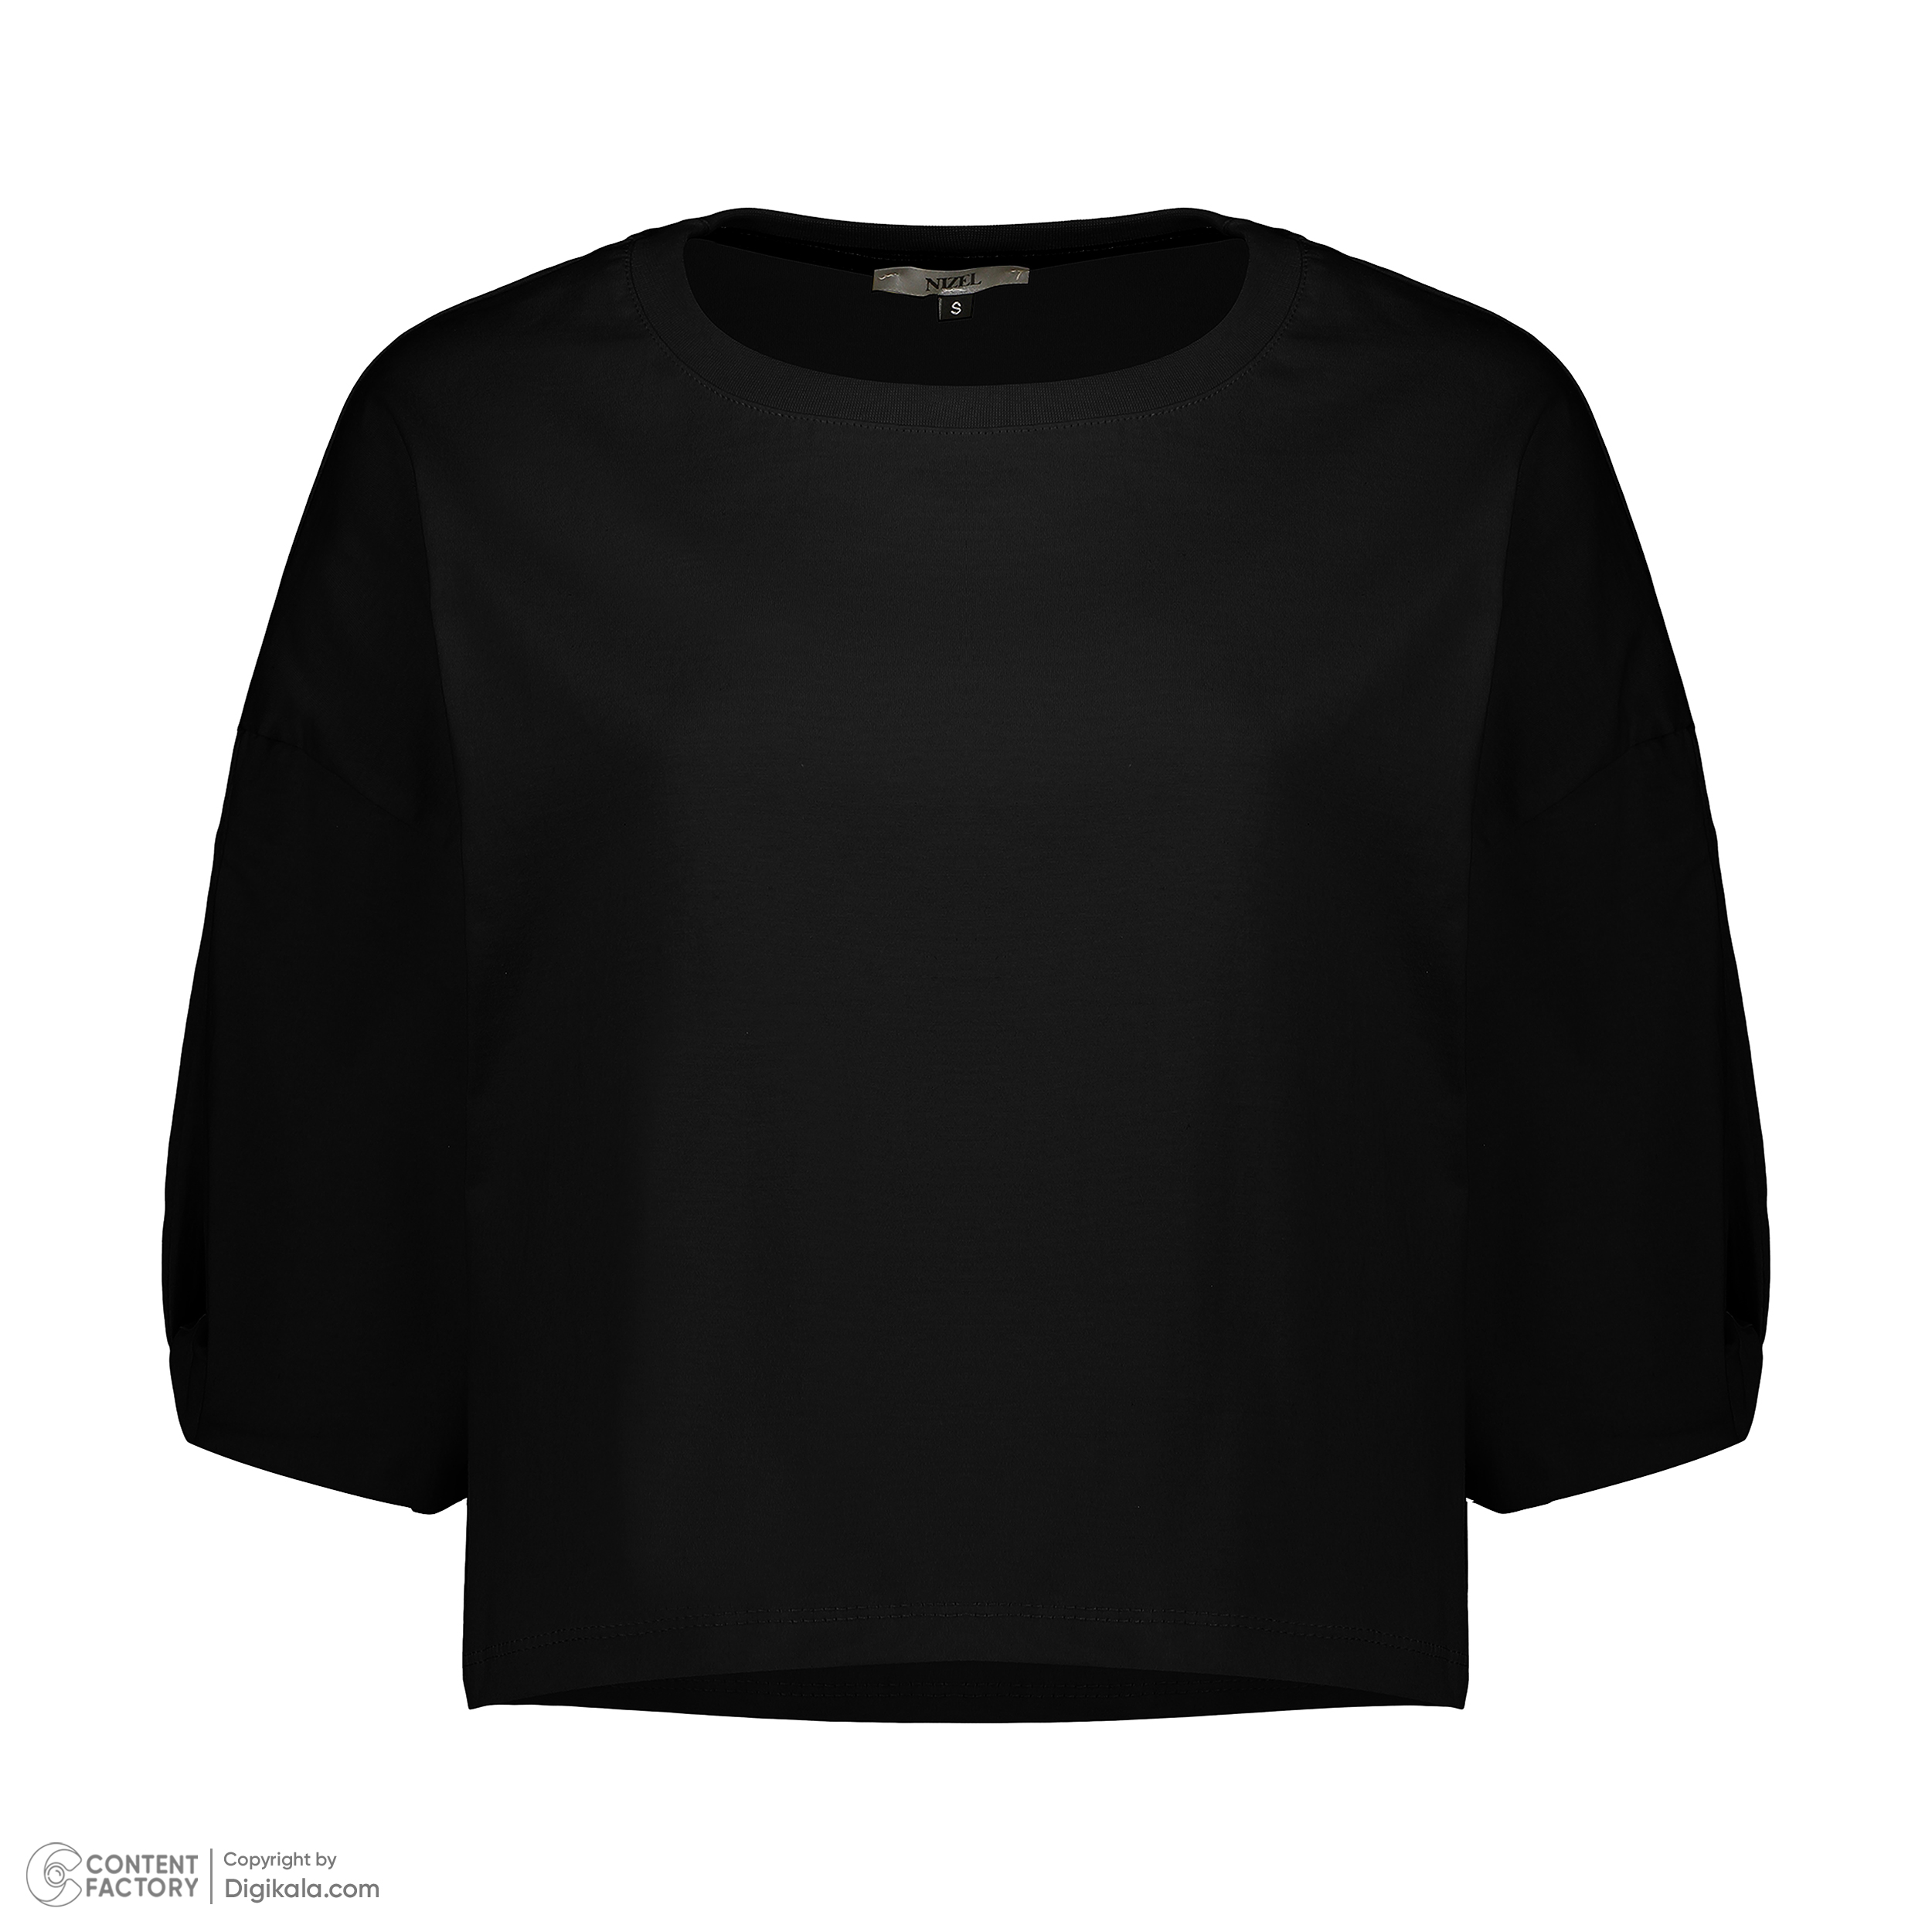 کراپ تی شرت آستین کوتاه زنانه نیزل مدل 0690-002 رنگ مشکی -  - 2